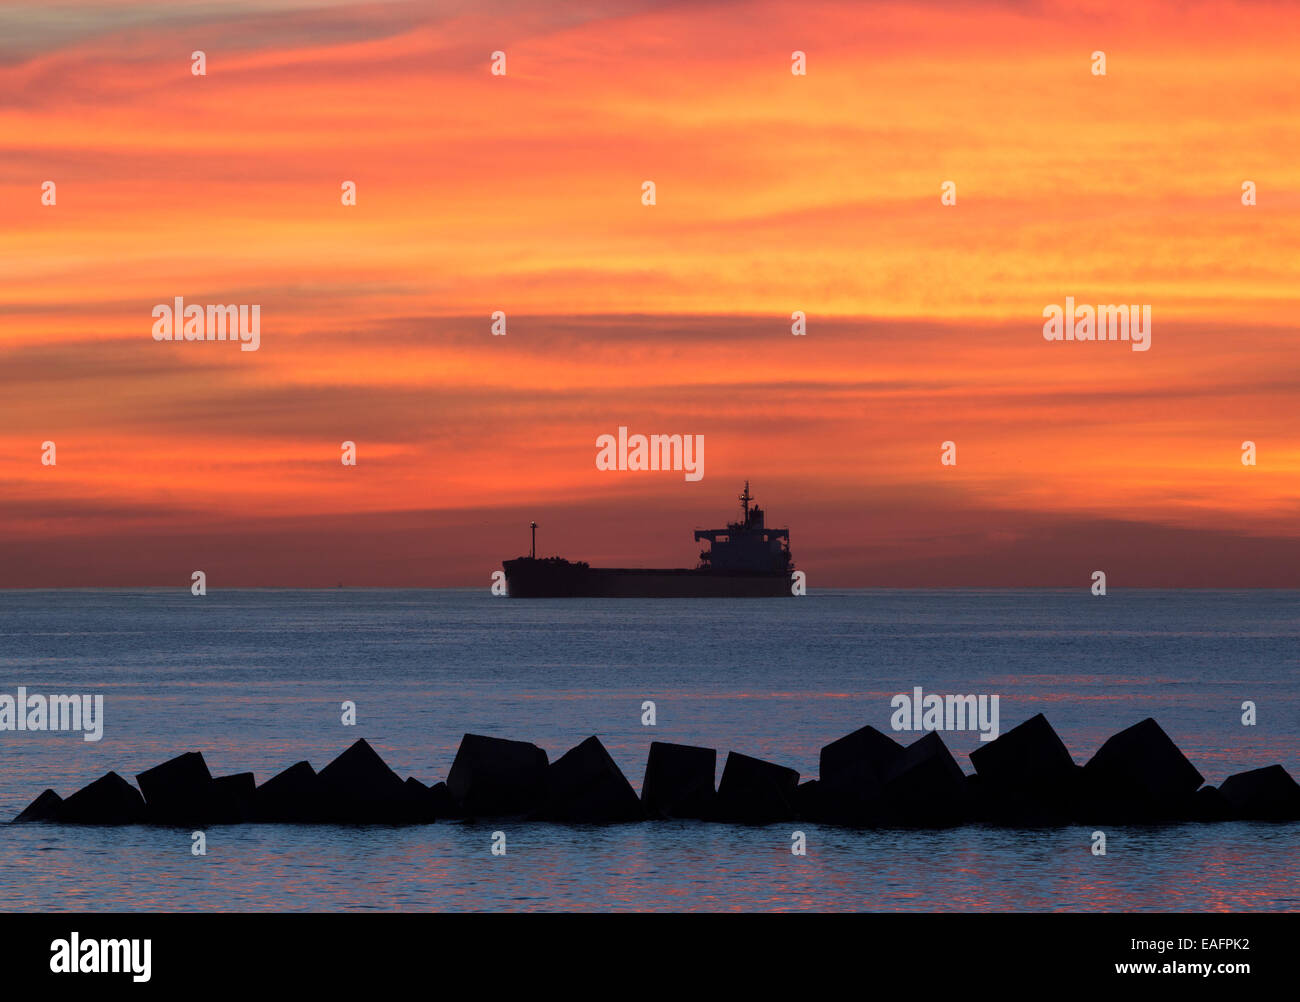 Oil tanker at sunrise Stock Photo